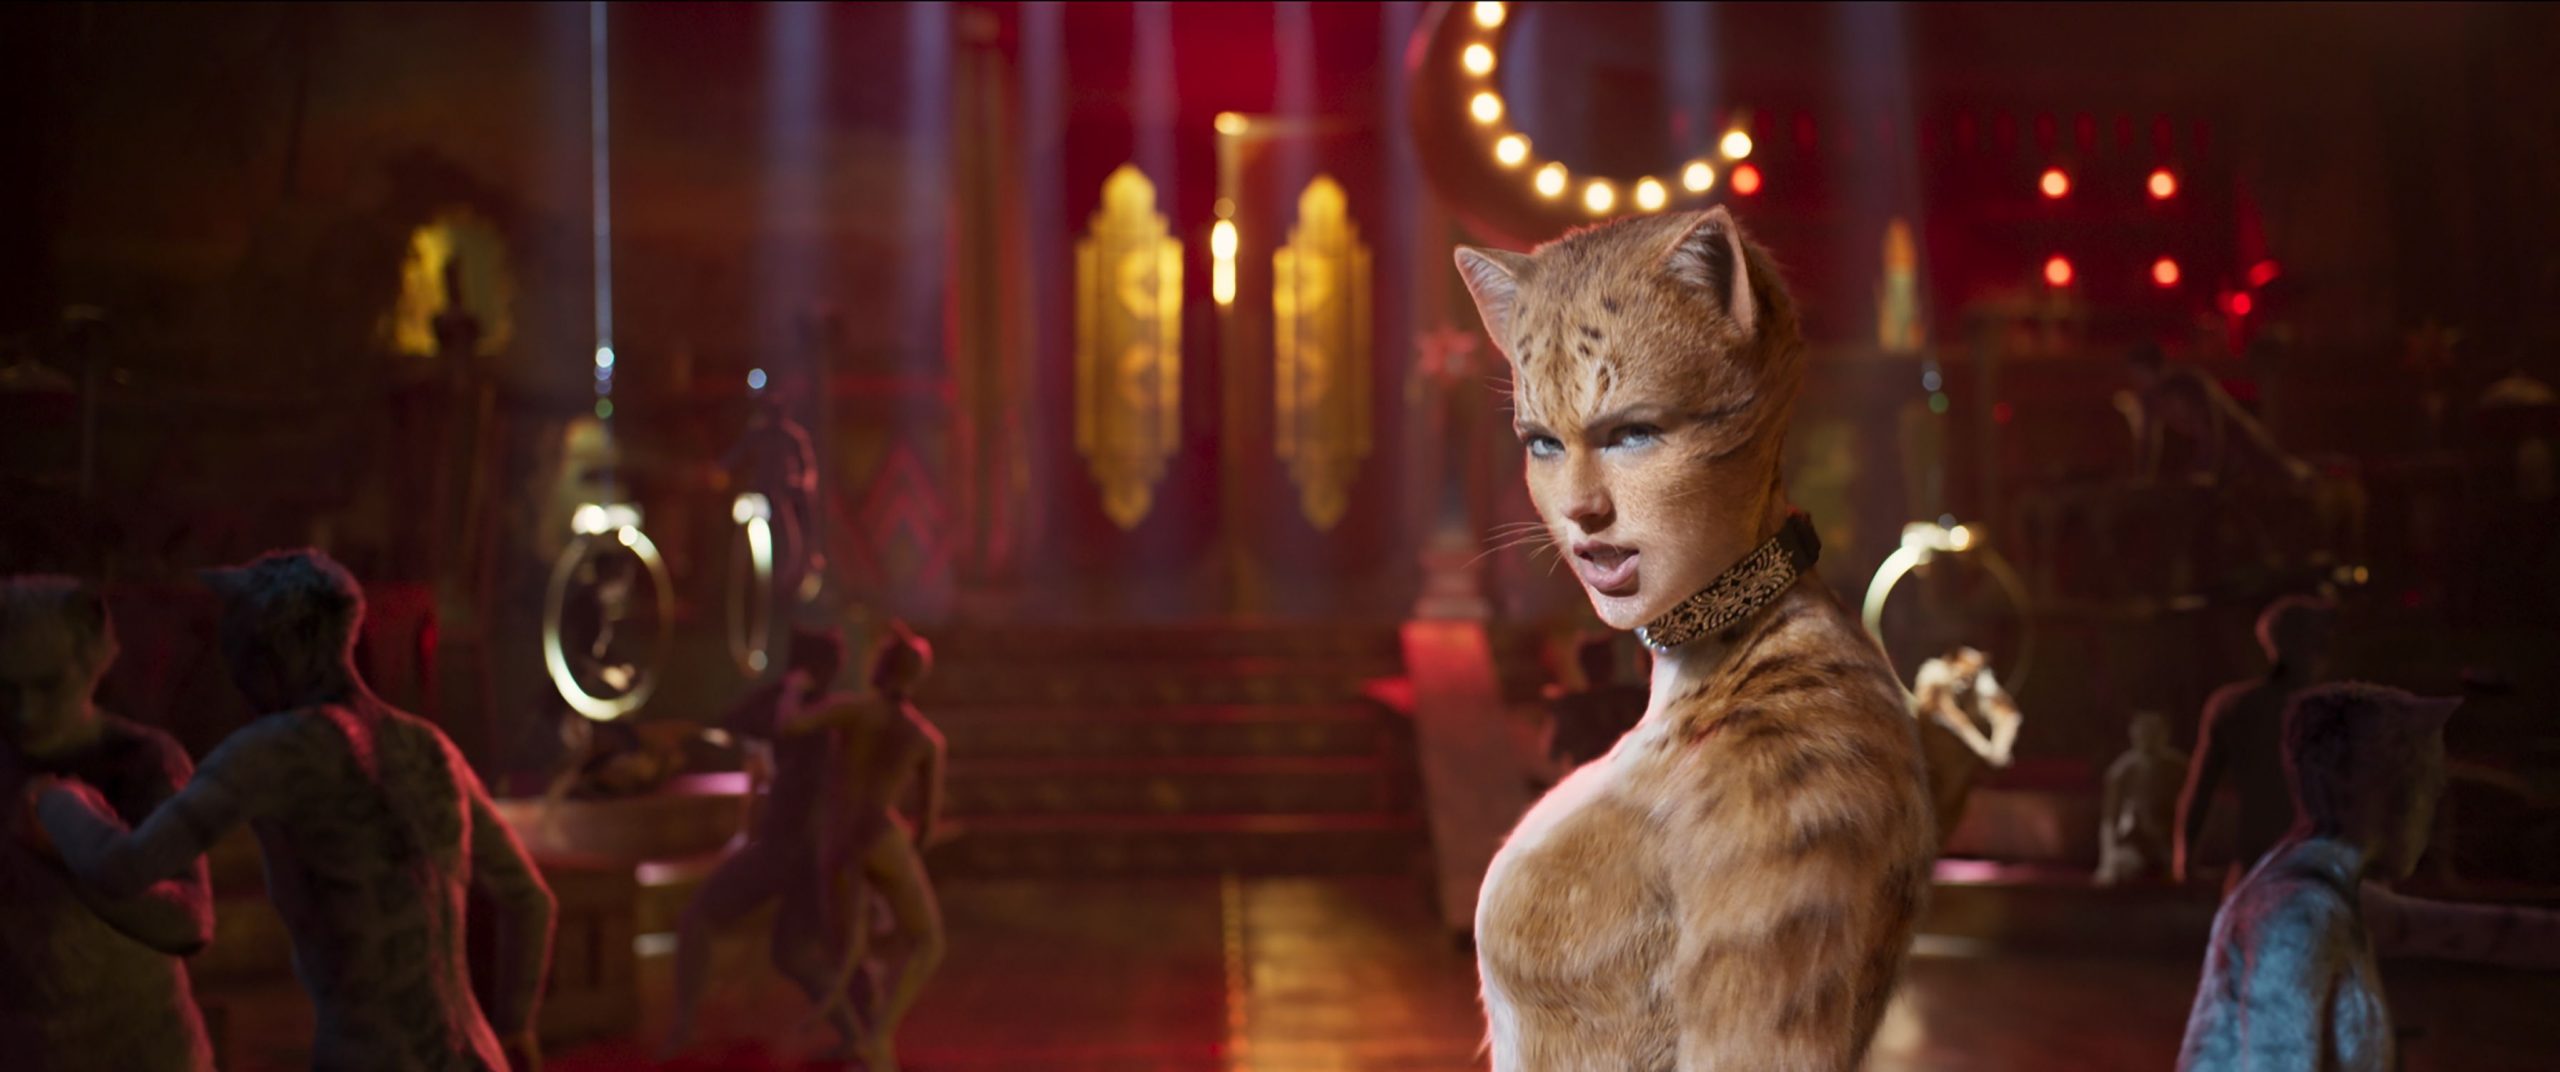 Η νέα κινηματογραφική εβδομάδα – «Cats» εκ των υστέρων…